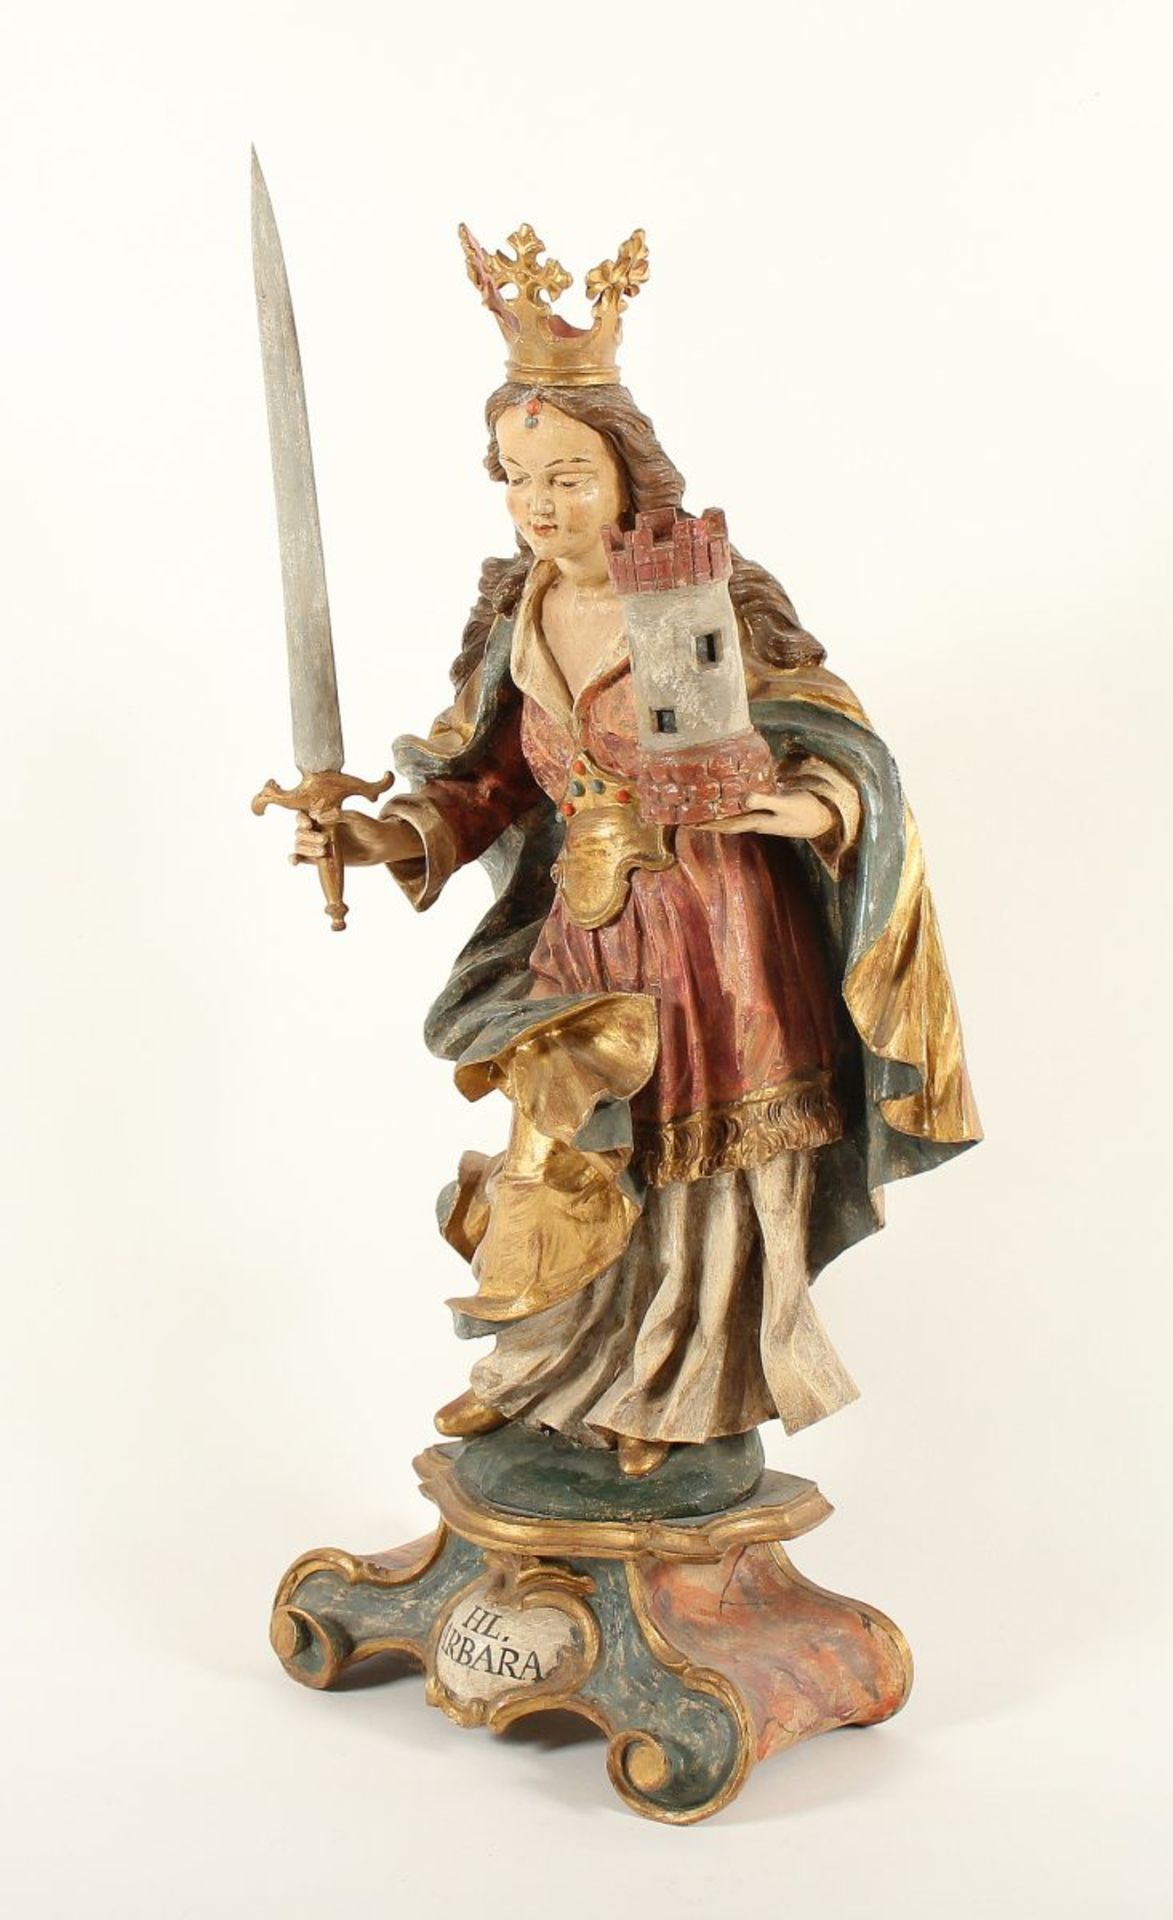 HEILIGE BARBARA, mit Turm und Schwert, Holz, geschnitzt, farbig gefasst, goldbemalt, H 80 (inkl. - Bild 2 aus 5